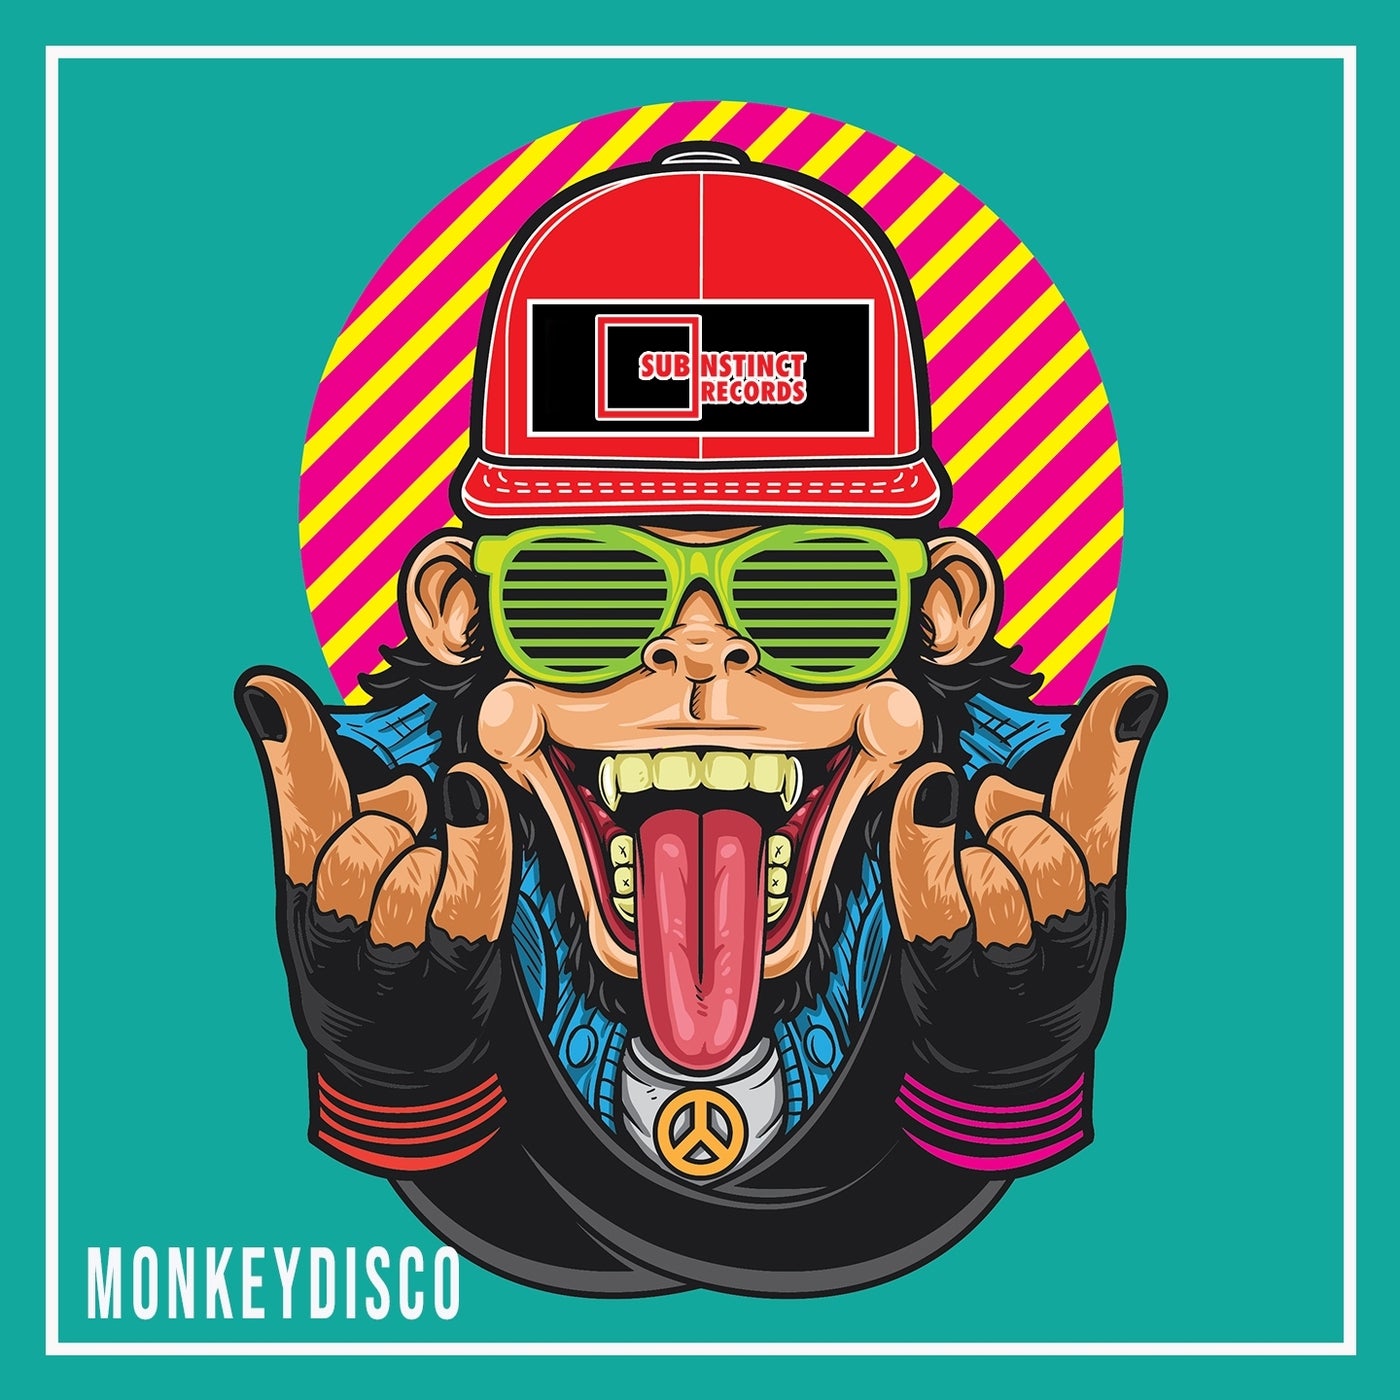 Monkeydisco